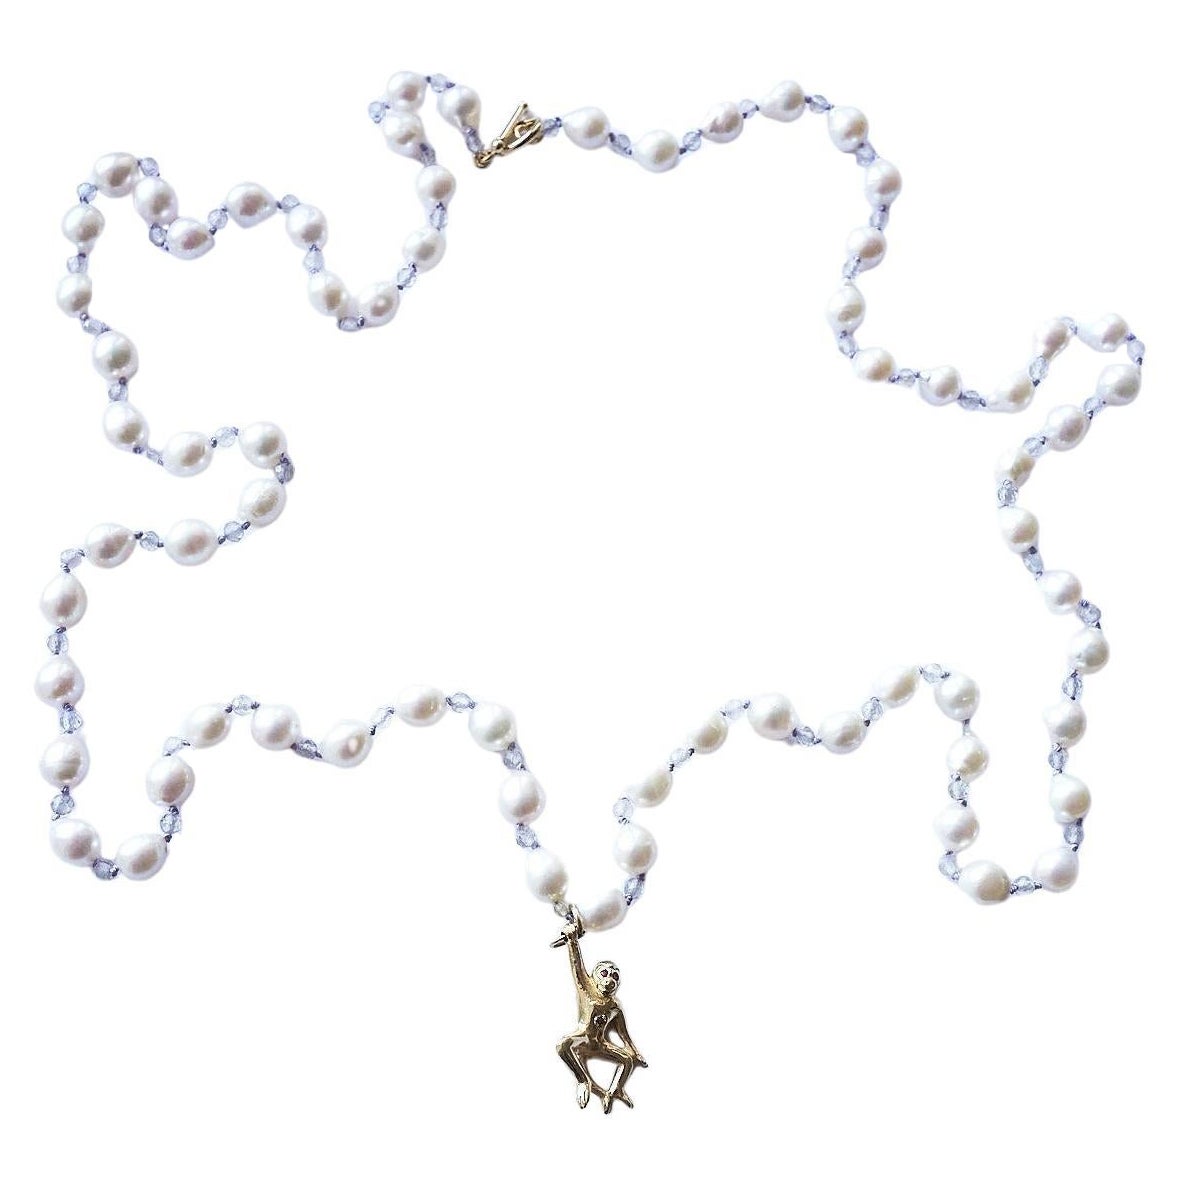 Halskette mit weißem Diamant, Rubin, Gold, Affen, weißer Perle, Labradorit, Seidenperlen